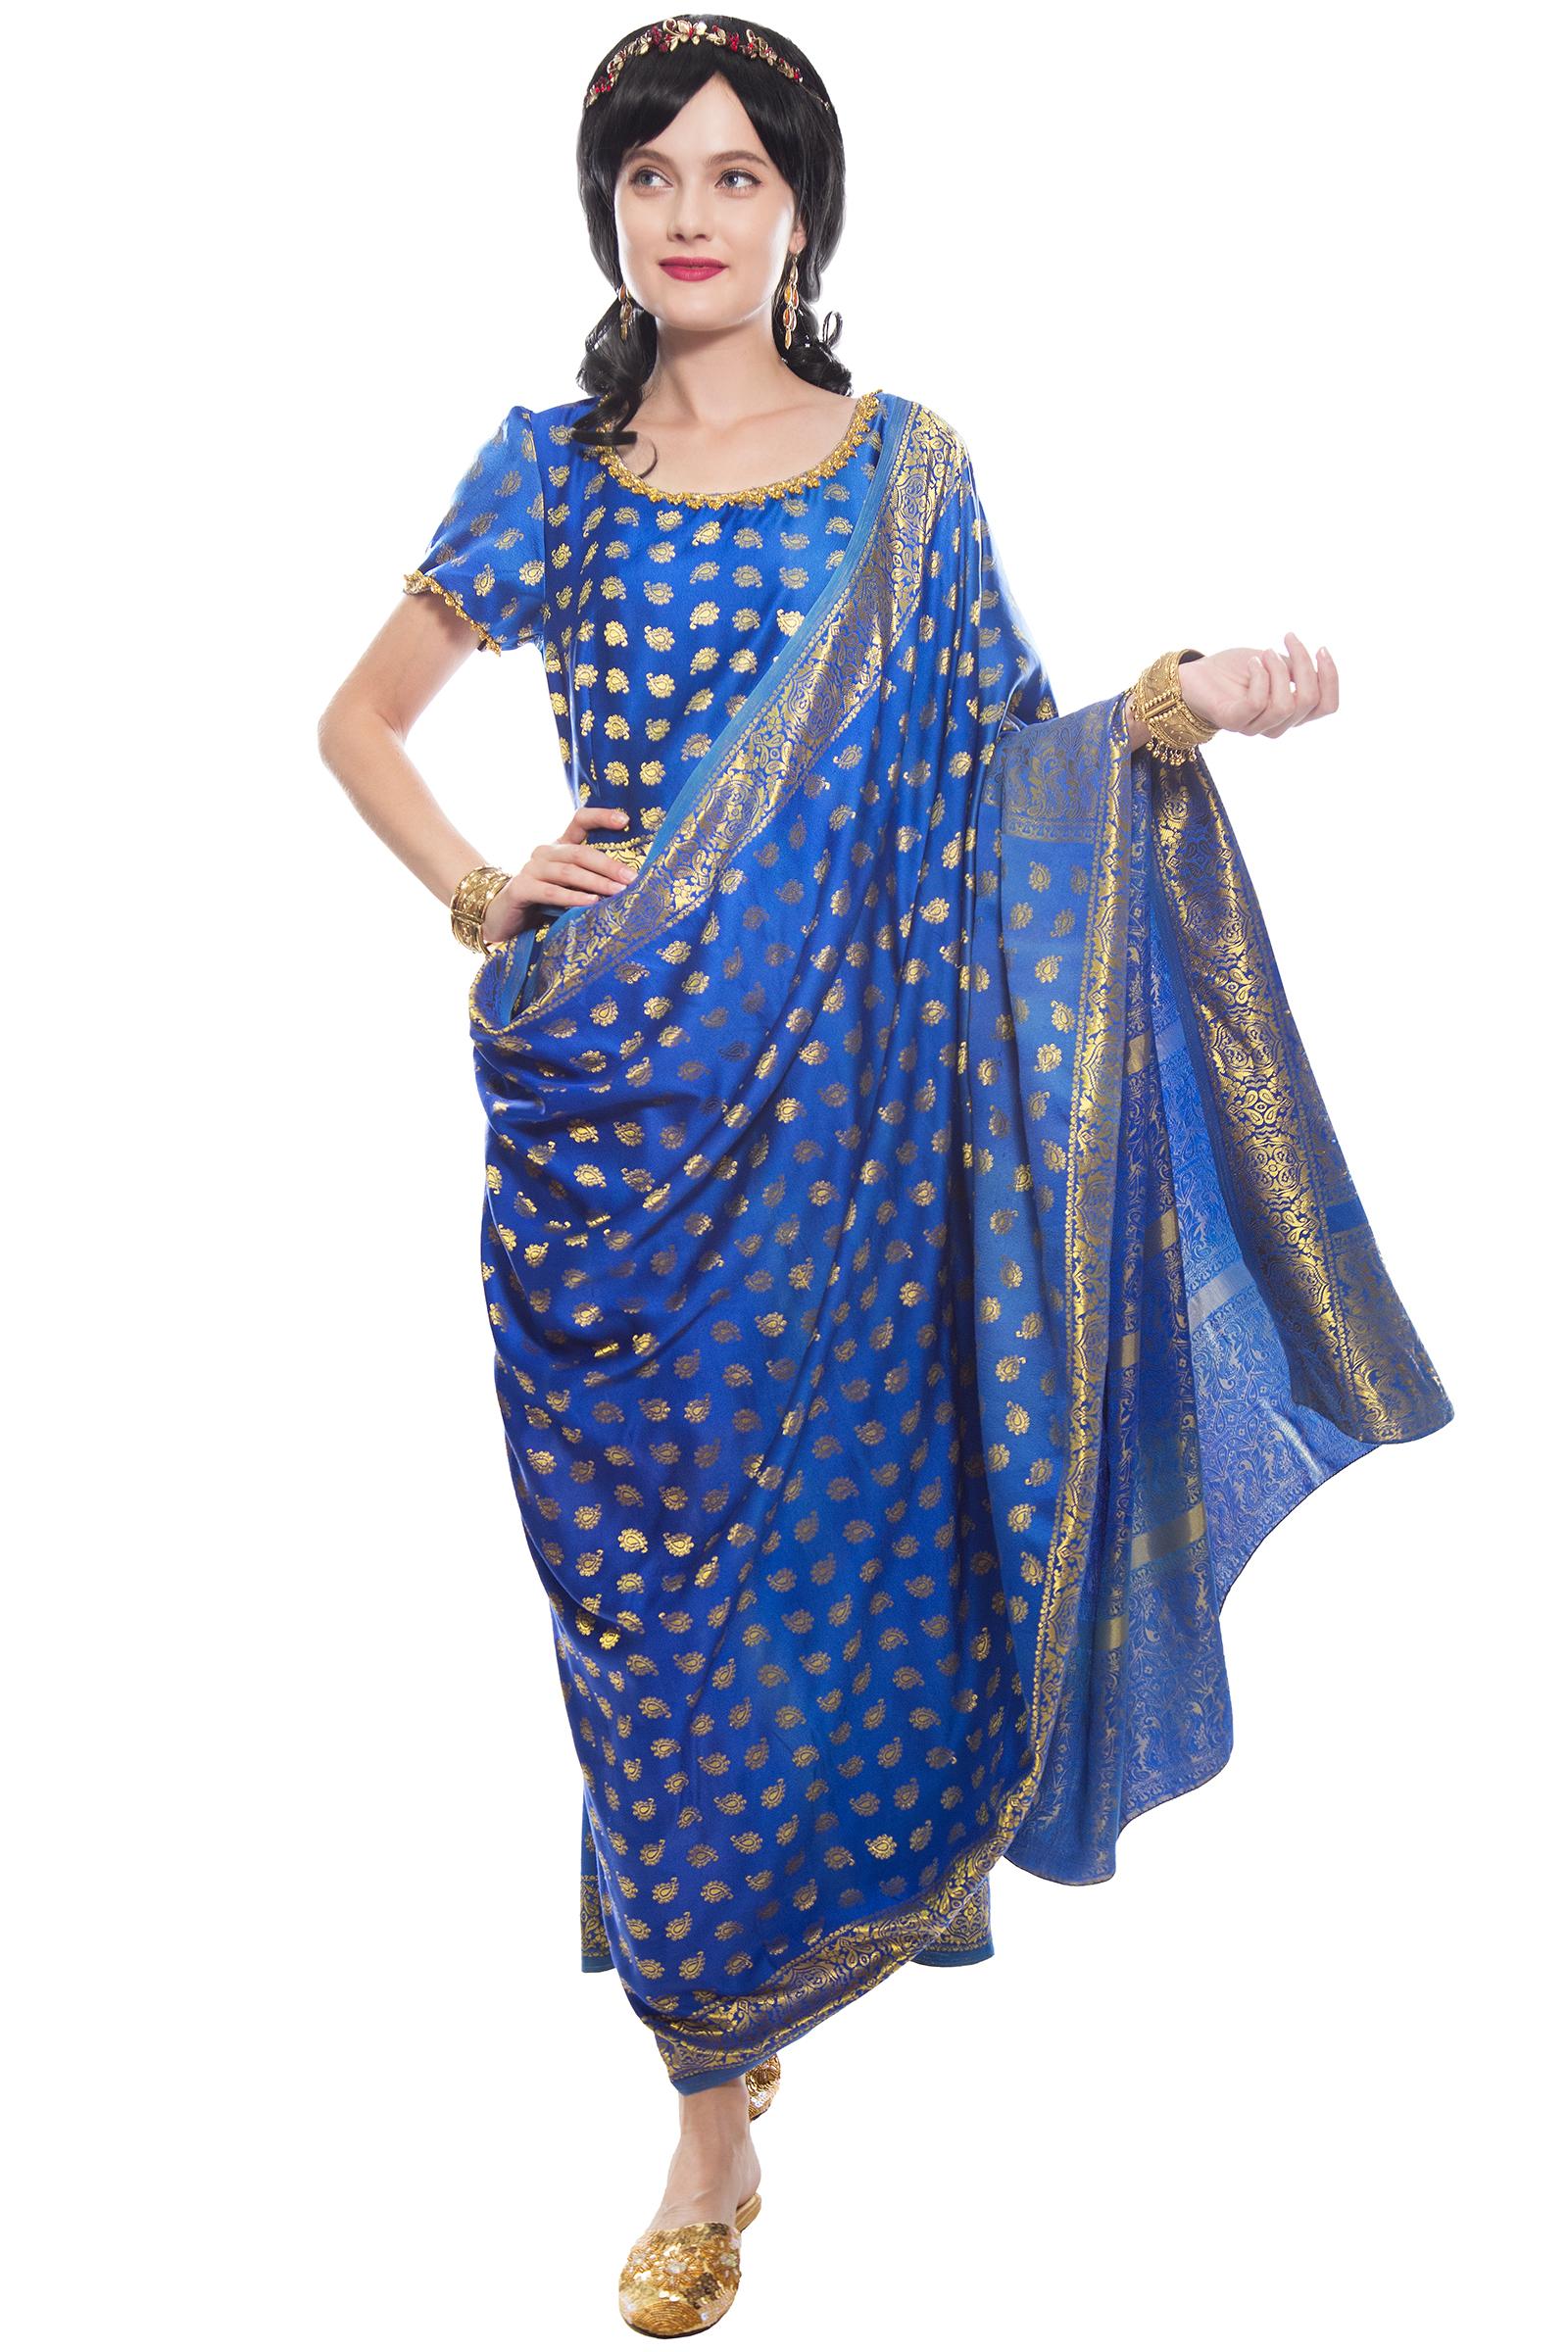 Индийское платье, сари - купить за 14000 руб: недорогие индийские в СПб